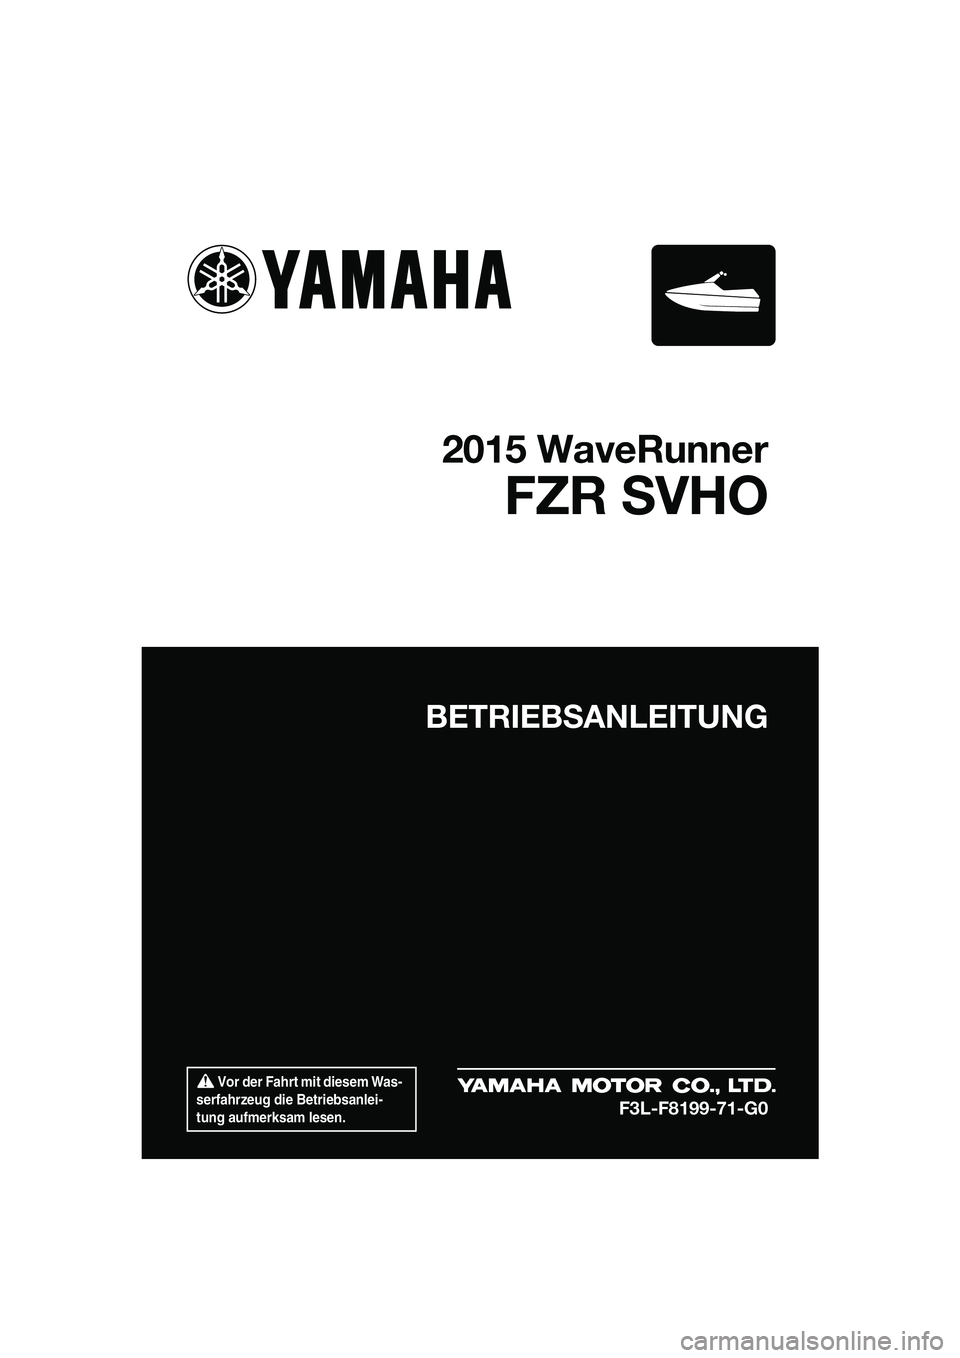 YAMAHA FZR SVHO 2015  Betriebsanleitungen (in German)  Vor der Fahrt mit diesem Was-
serfahrzeug die Betriebsanlei-
tung aufmerksam lesen.
BETRIEBSANLEITUNG
2015 WaveRunner
FZR SVHO
F3L-F8199-71-G0
UF3L71G0.book  Page 1  Friday, June 20, 2014  2:19 PM 